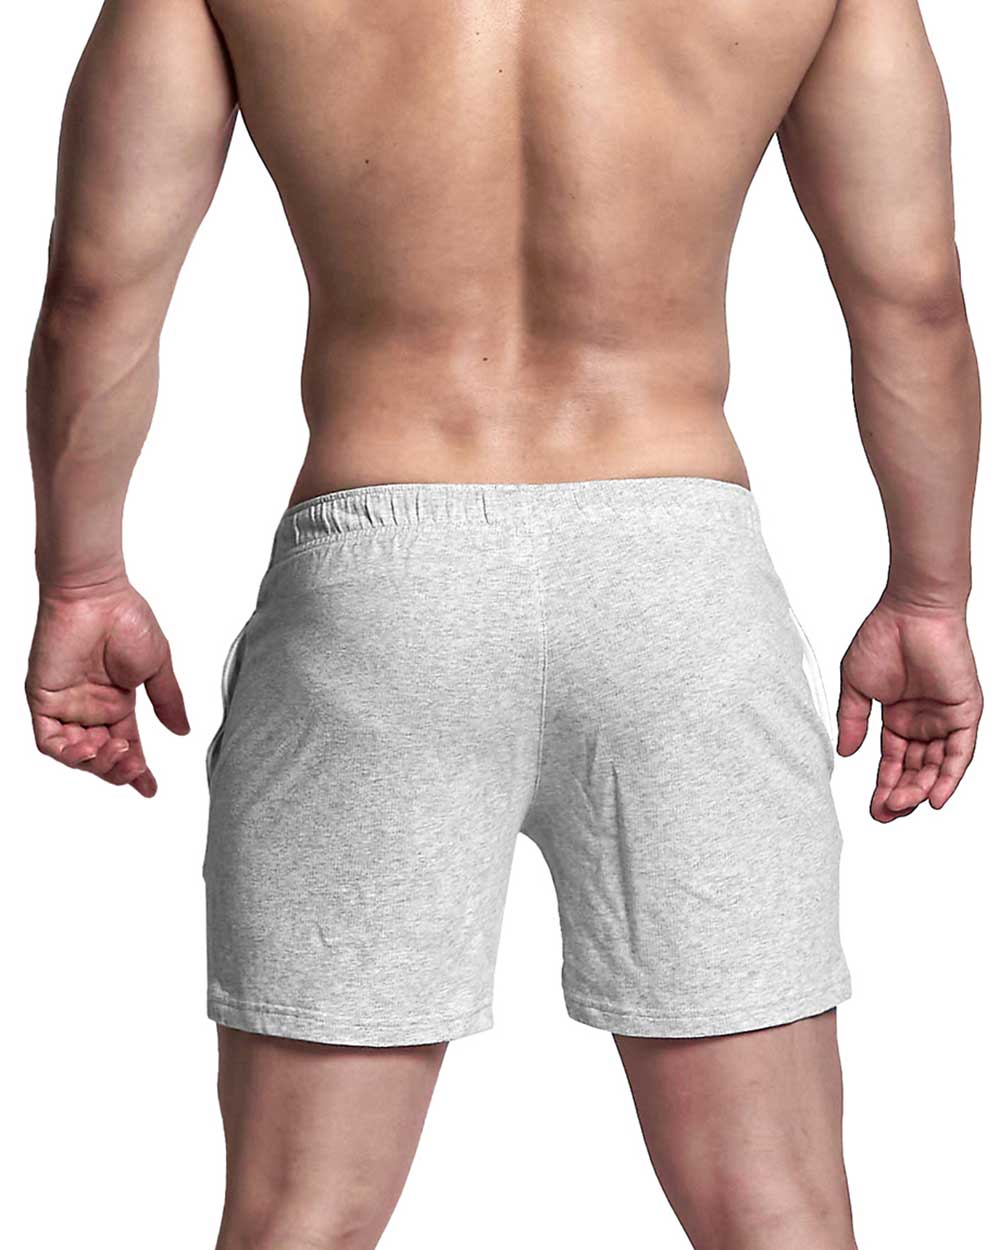 Activewear 2 Pocket Sweat Shorts {Lite Weight Fleece) - Melange [4330]